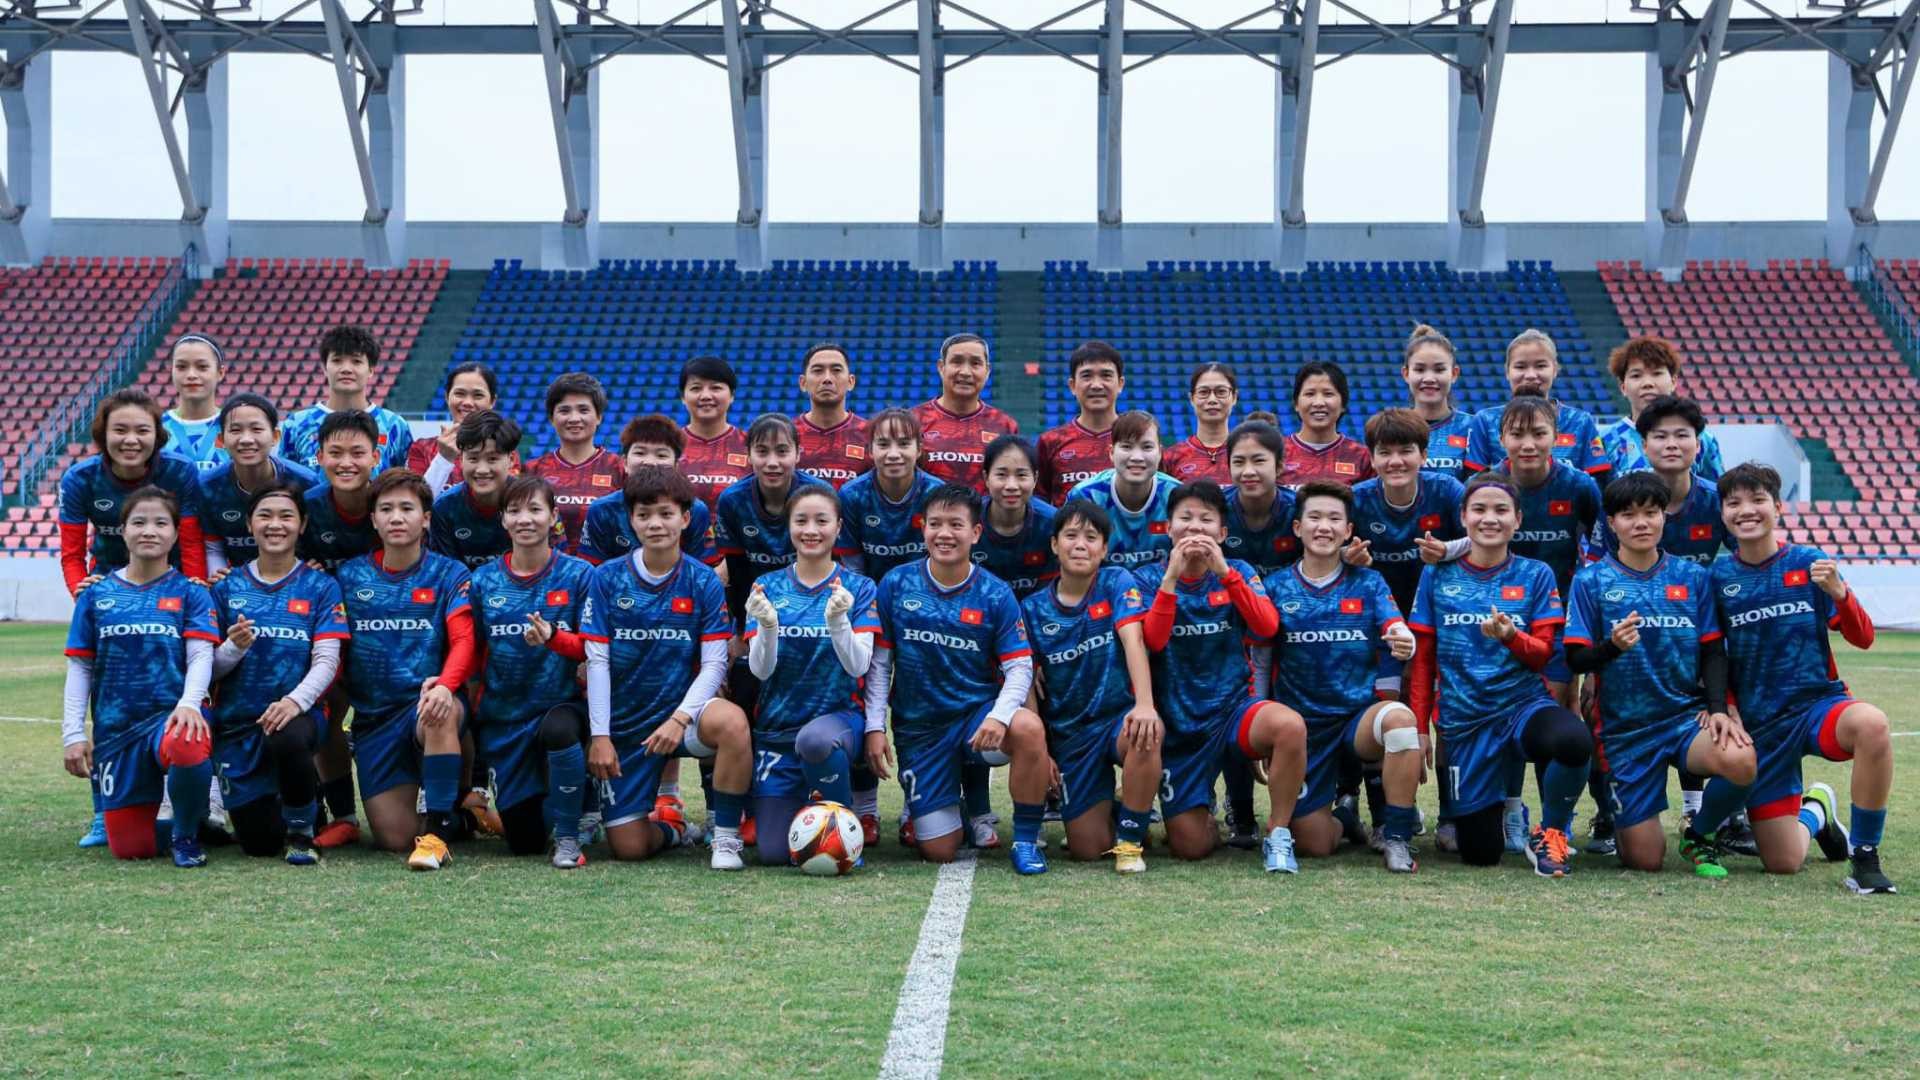 Hé lộ tiền thưởng khổng lồ đội tuyển nữ Việt Nam nhận được khi dự Worldcup